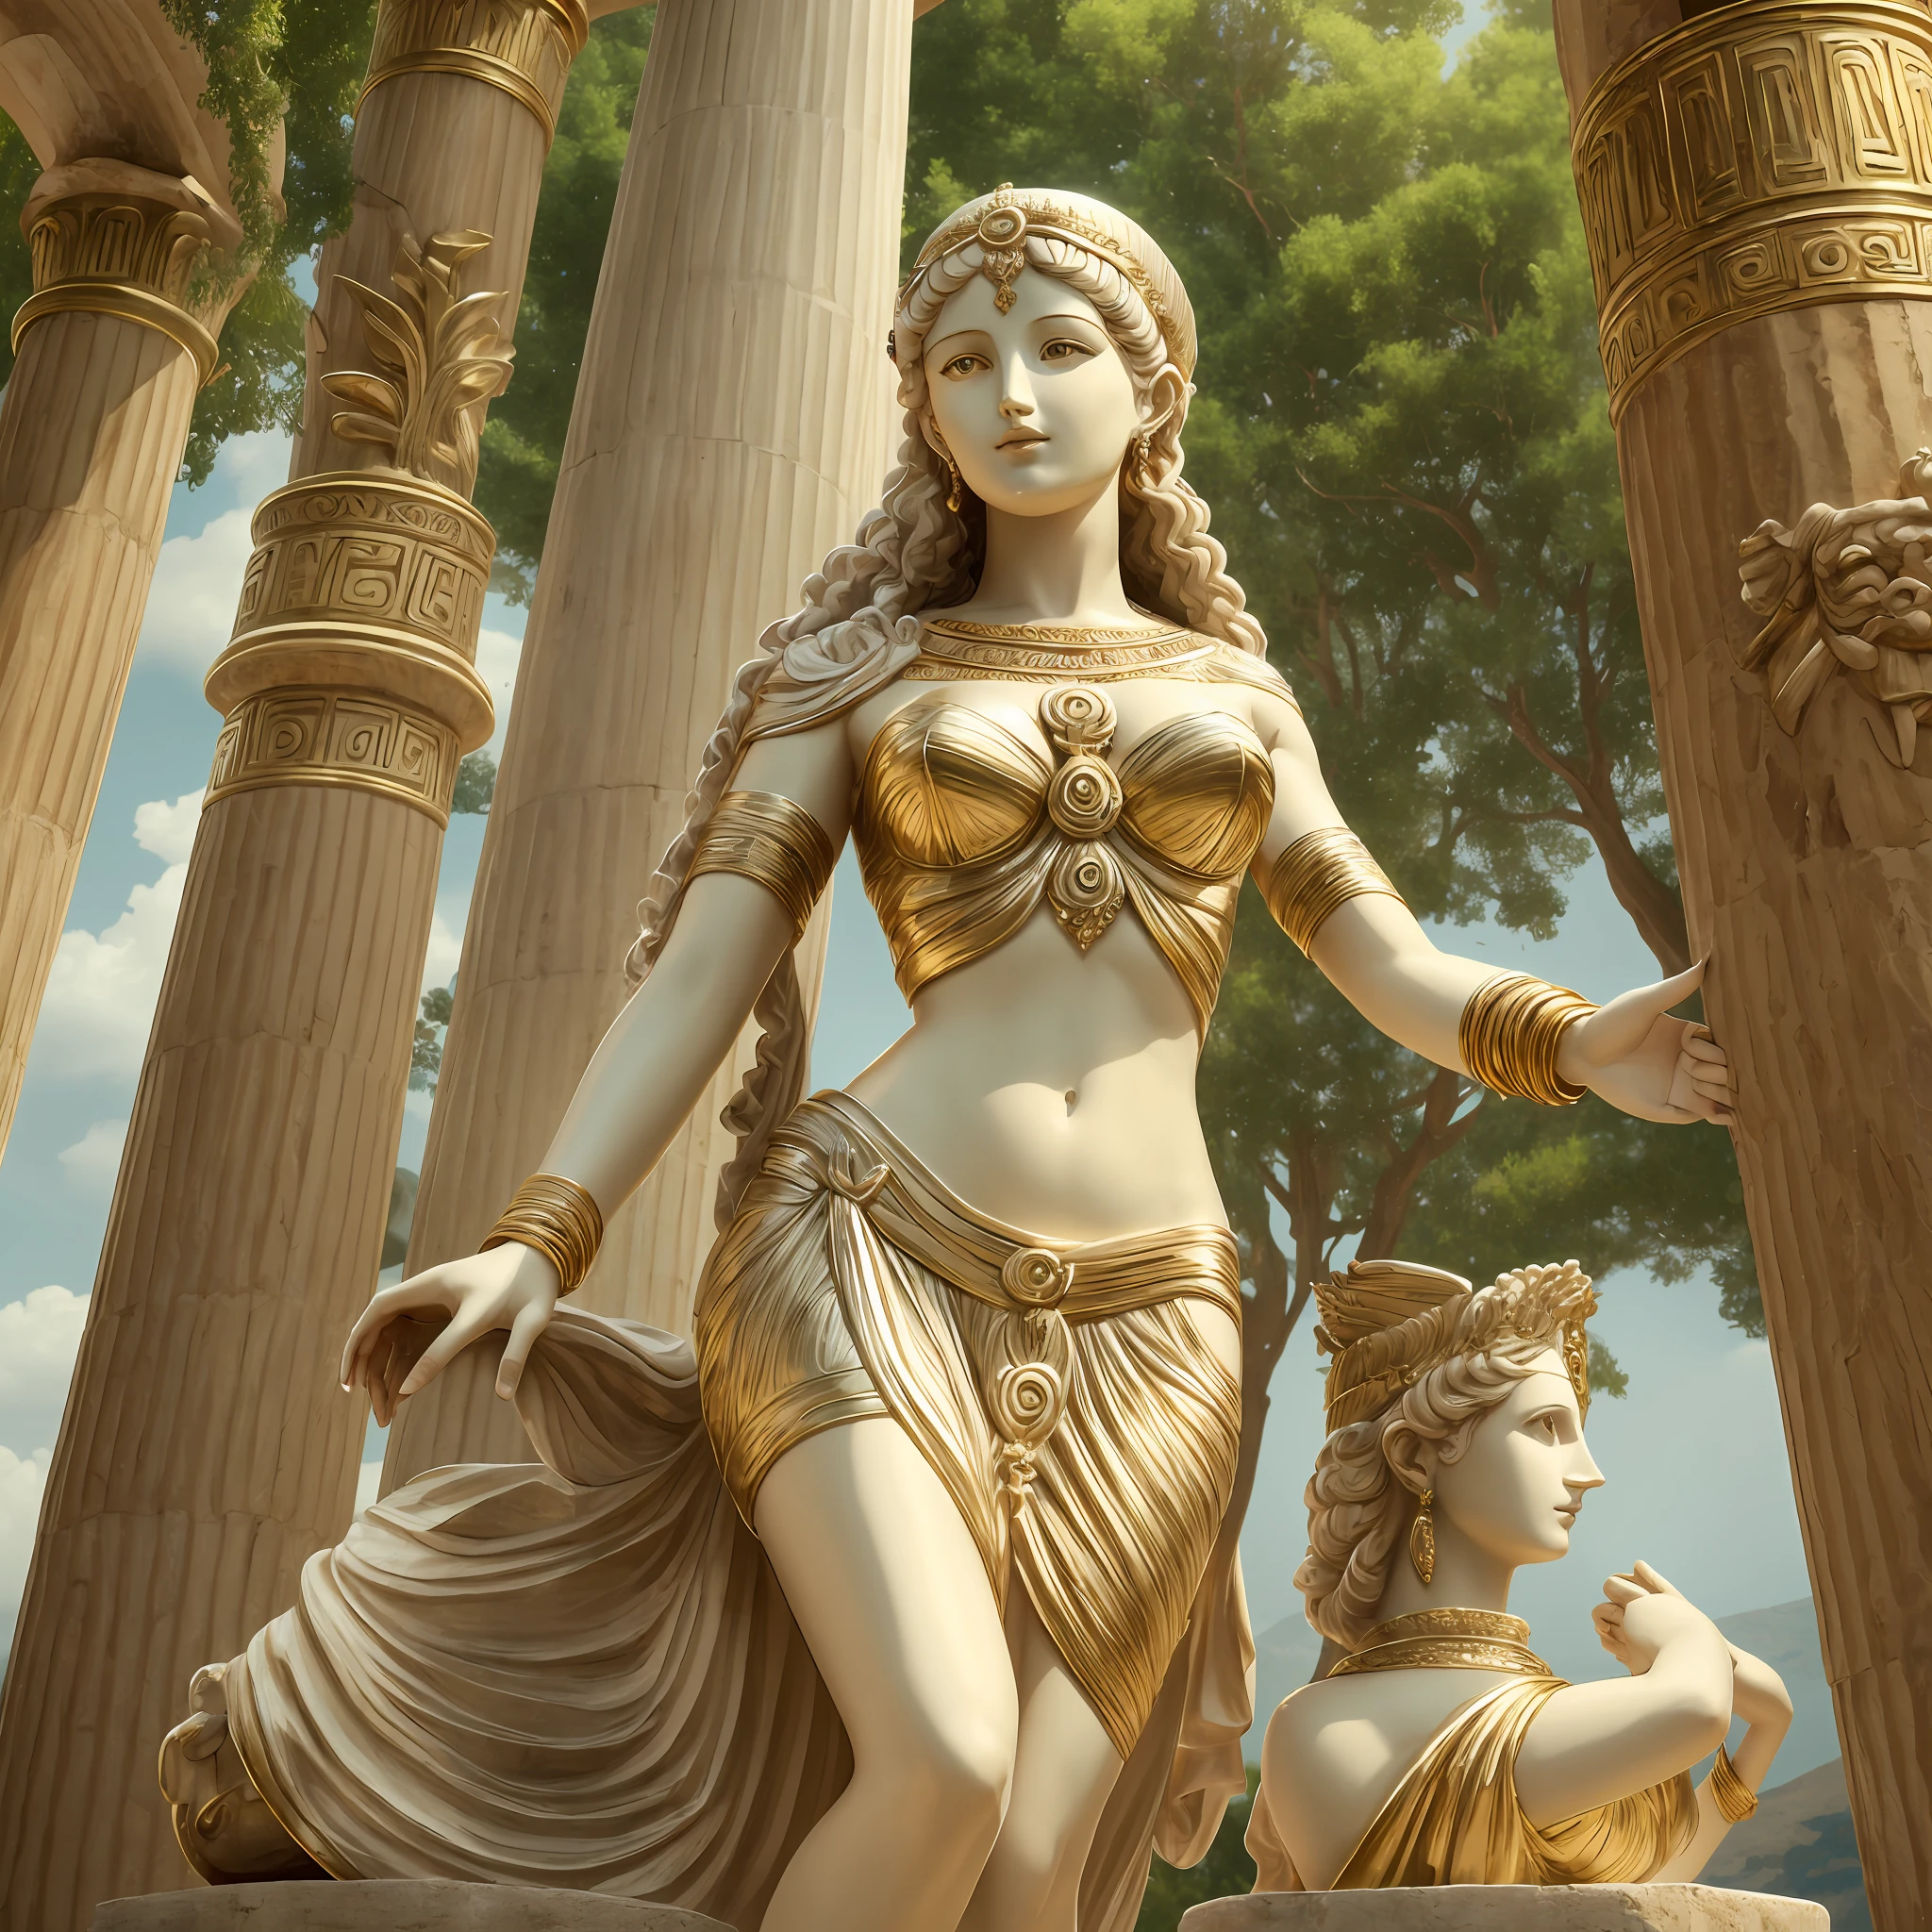 阿佛洛狄忒, white dress like 希腊女神, 阿拉法特女像, 两只手臂, 两条腿, 神秘宇宙背景, 爱神, 希腊女神 of love and peace, 维纳斯女神, 光明女神, 赫斯提亚女神, 美丽女神, 希腊女神, 智慧女神, 希腊女神 Athena, 圣女神, 只有一个人